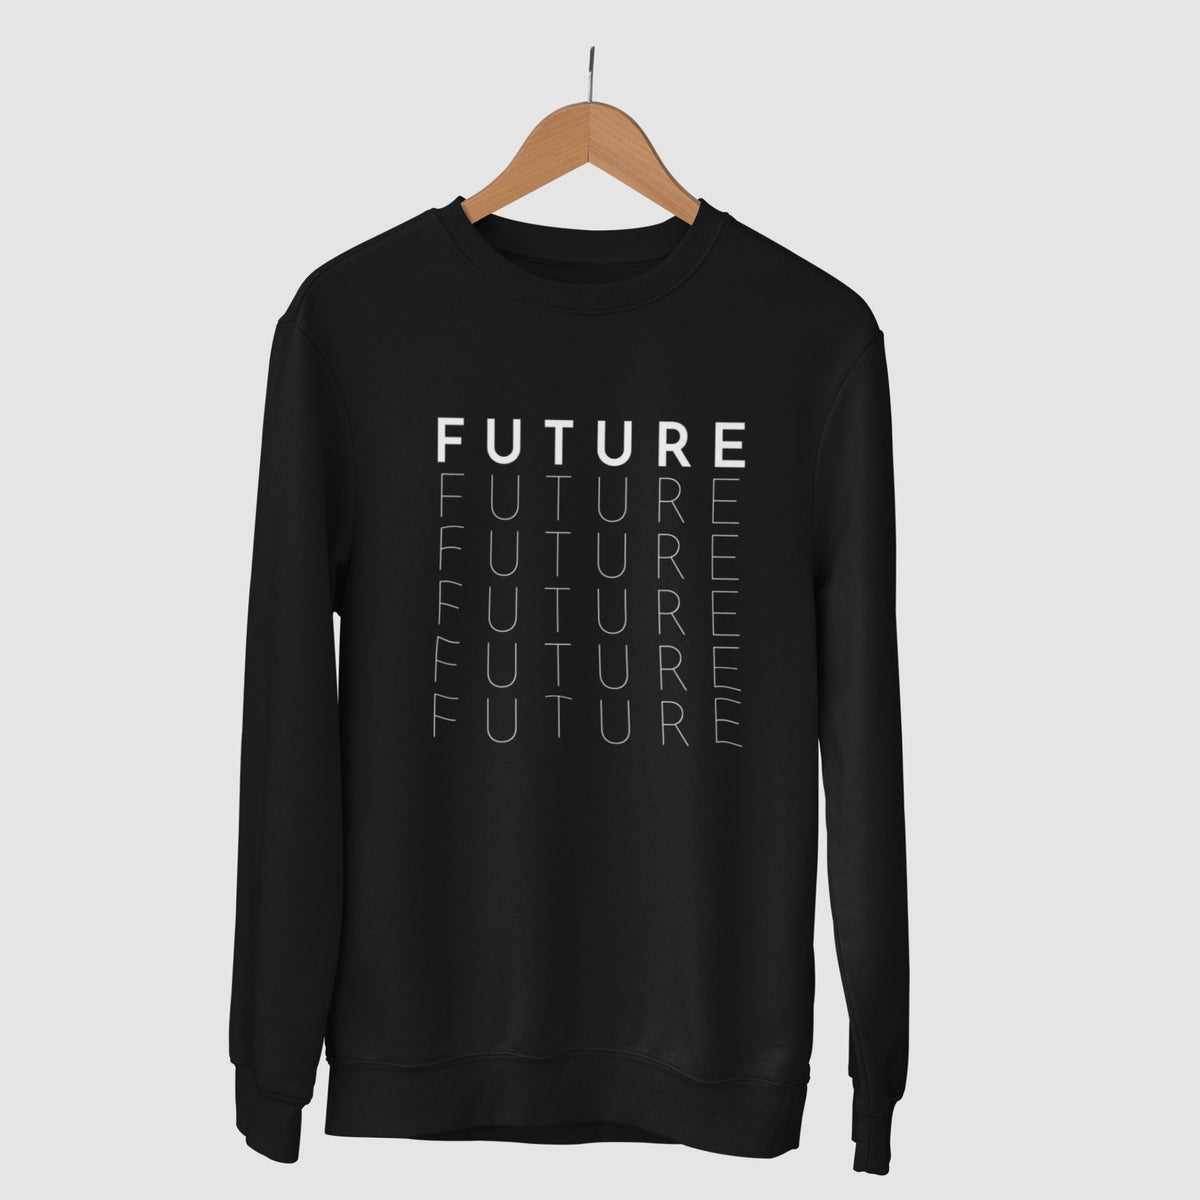 future-cotton-printed-unisex-black-sweatshirt-gogirgit-com